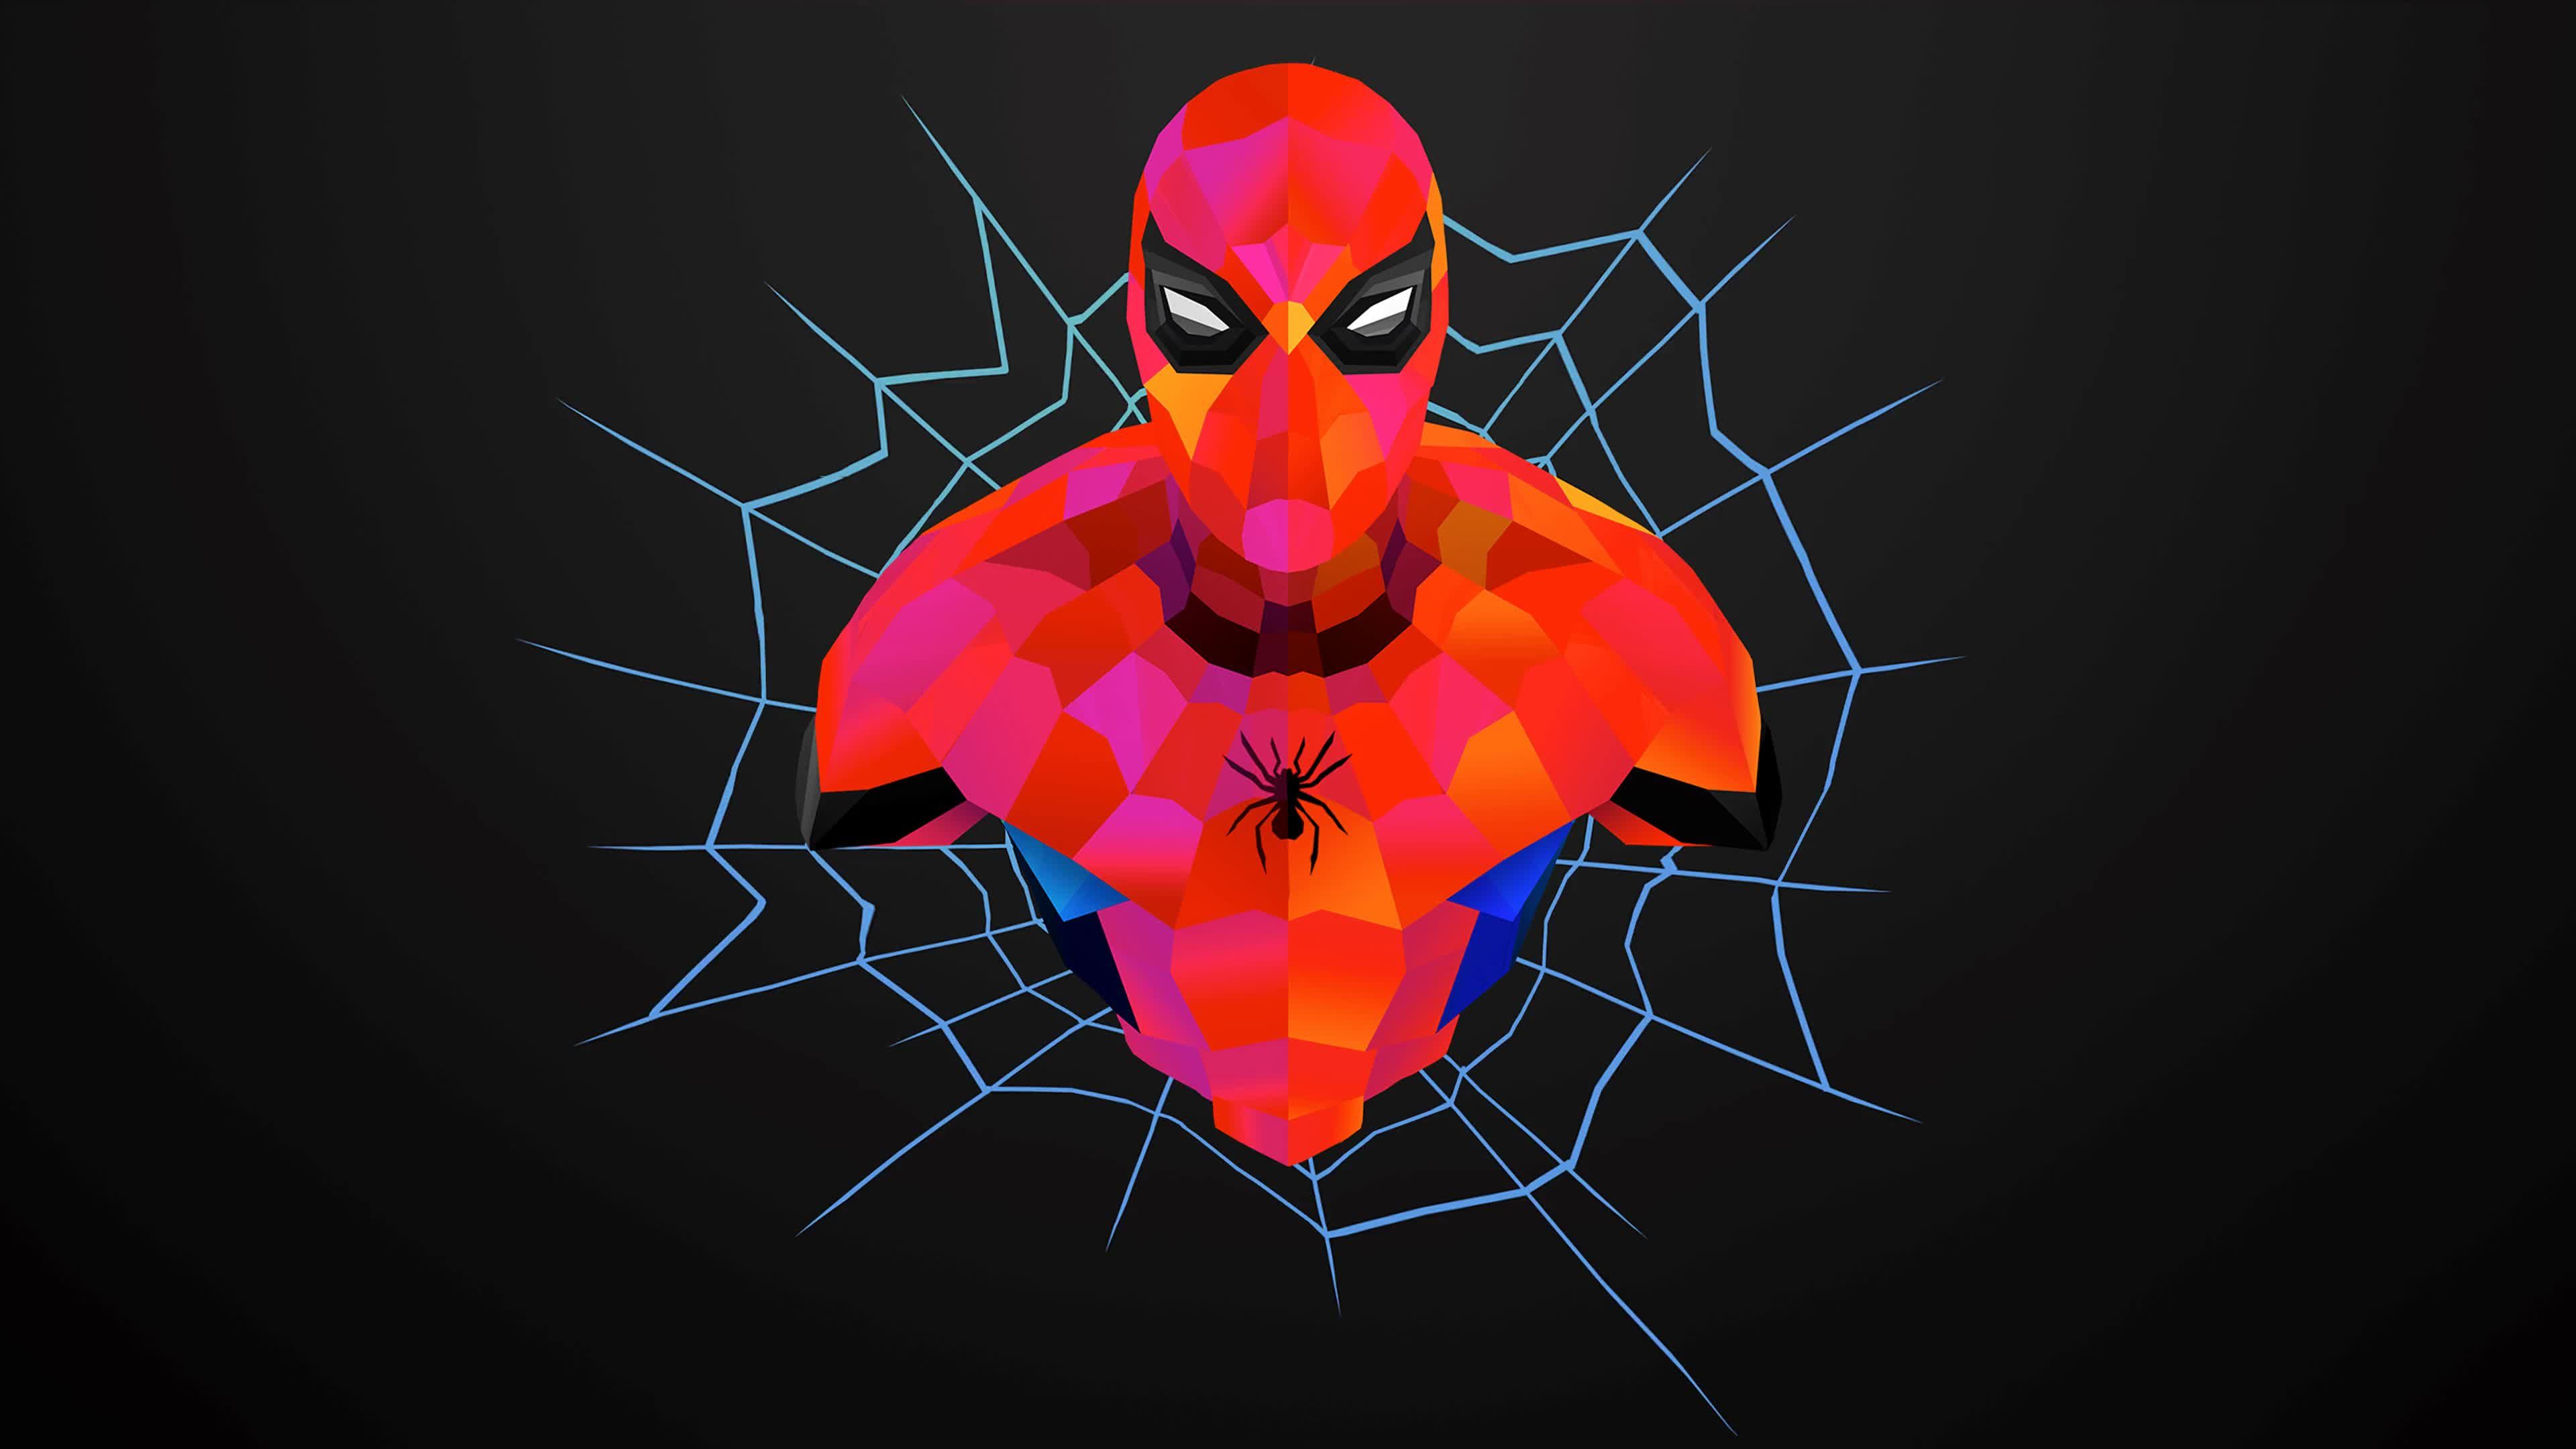 spider man pc wallpaper